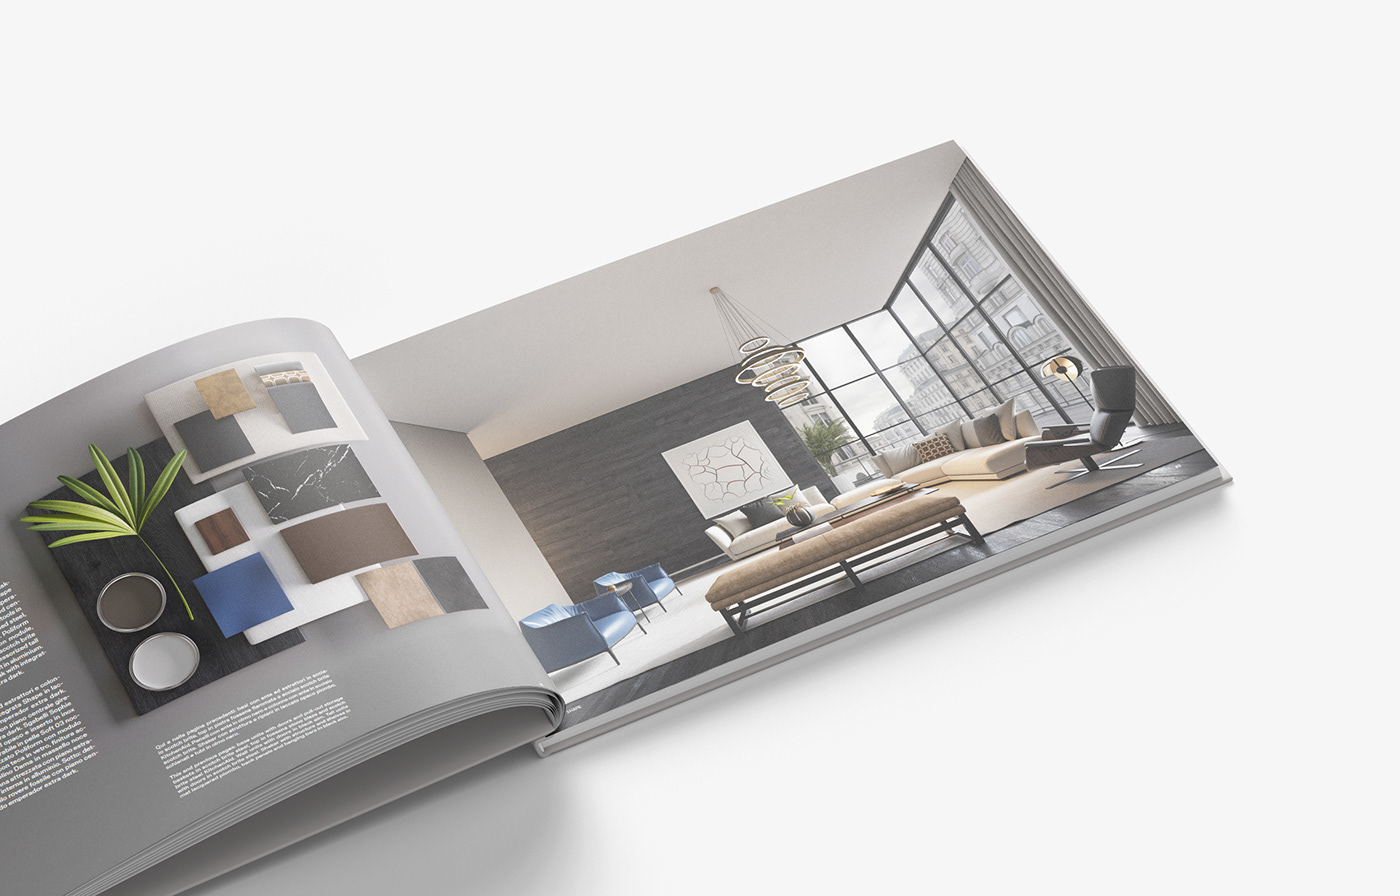 3D archviz catalog CGI decor design furniture interiors photorealistic rendering